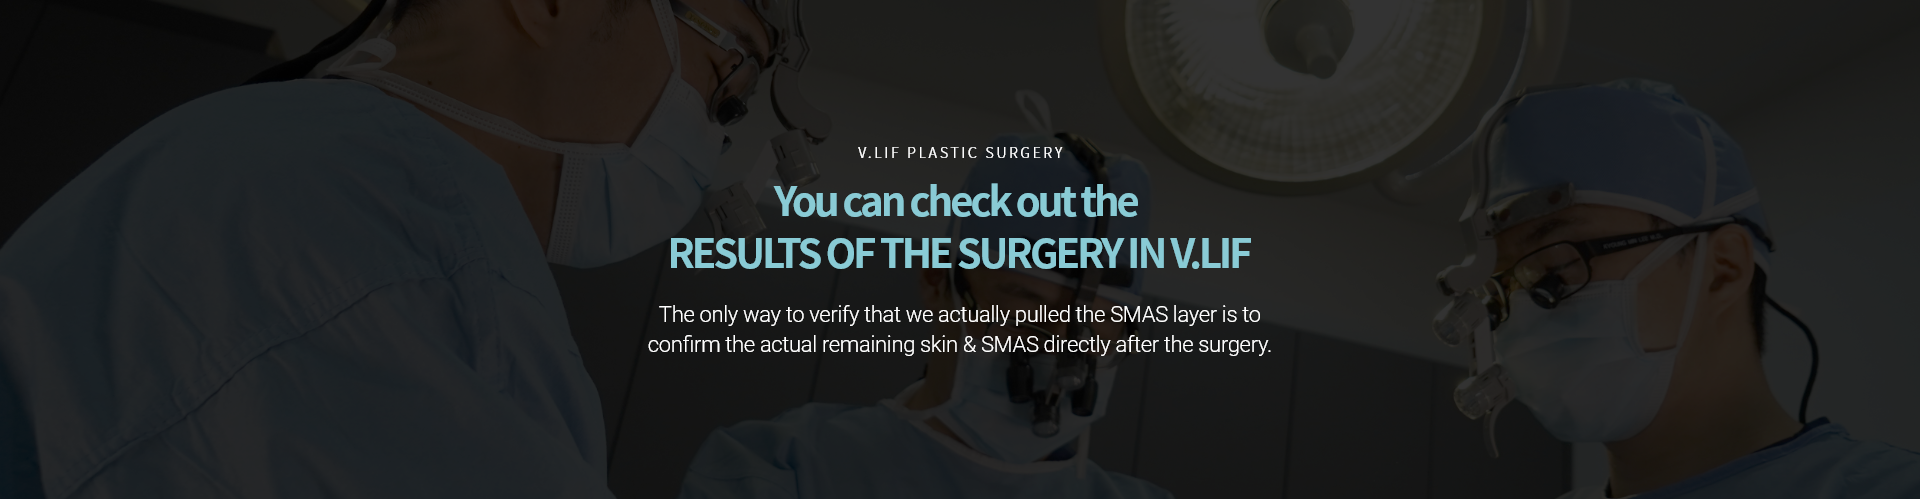 V.LIF PLASTIC SURGERY 수술결과를 확인 할 수 있는 빌리프 스마스층을 실제로 당겼는지 확인 할 수 있는 유일한 방법은 수술 후 당기고 남은 스마스 및 피부를 삭제한 것을 확인하는 것입니다.